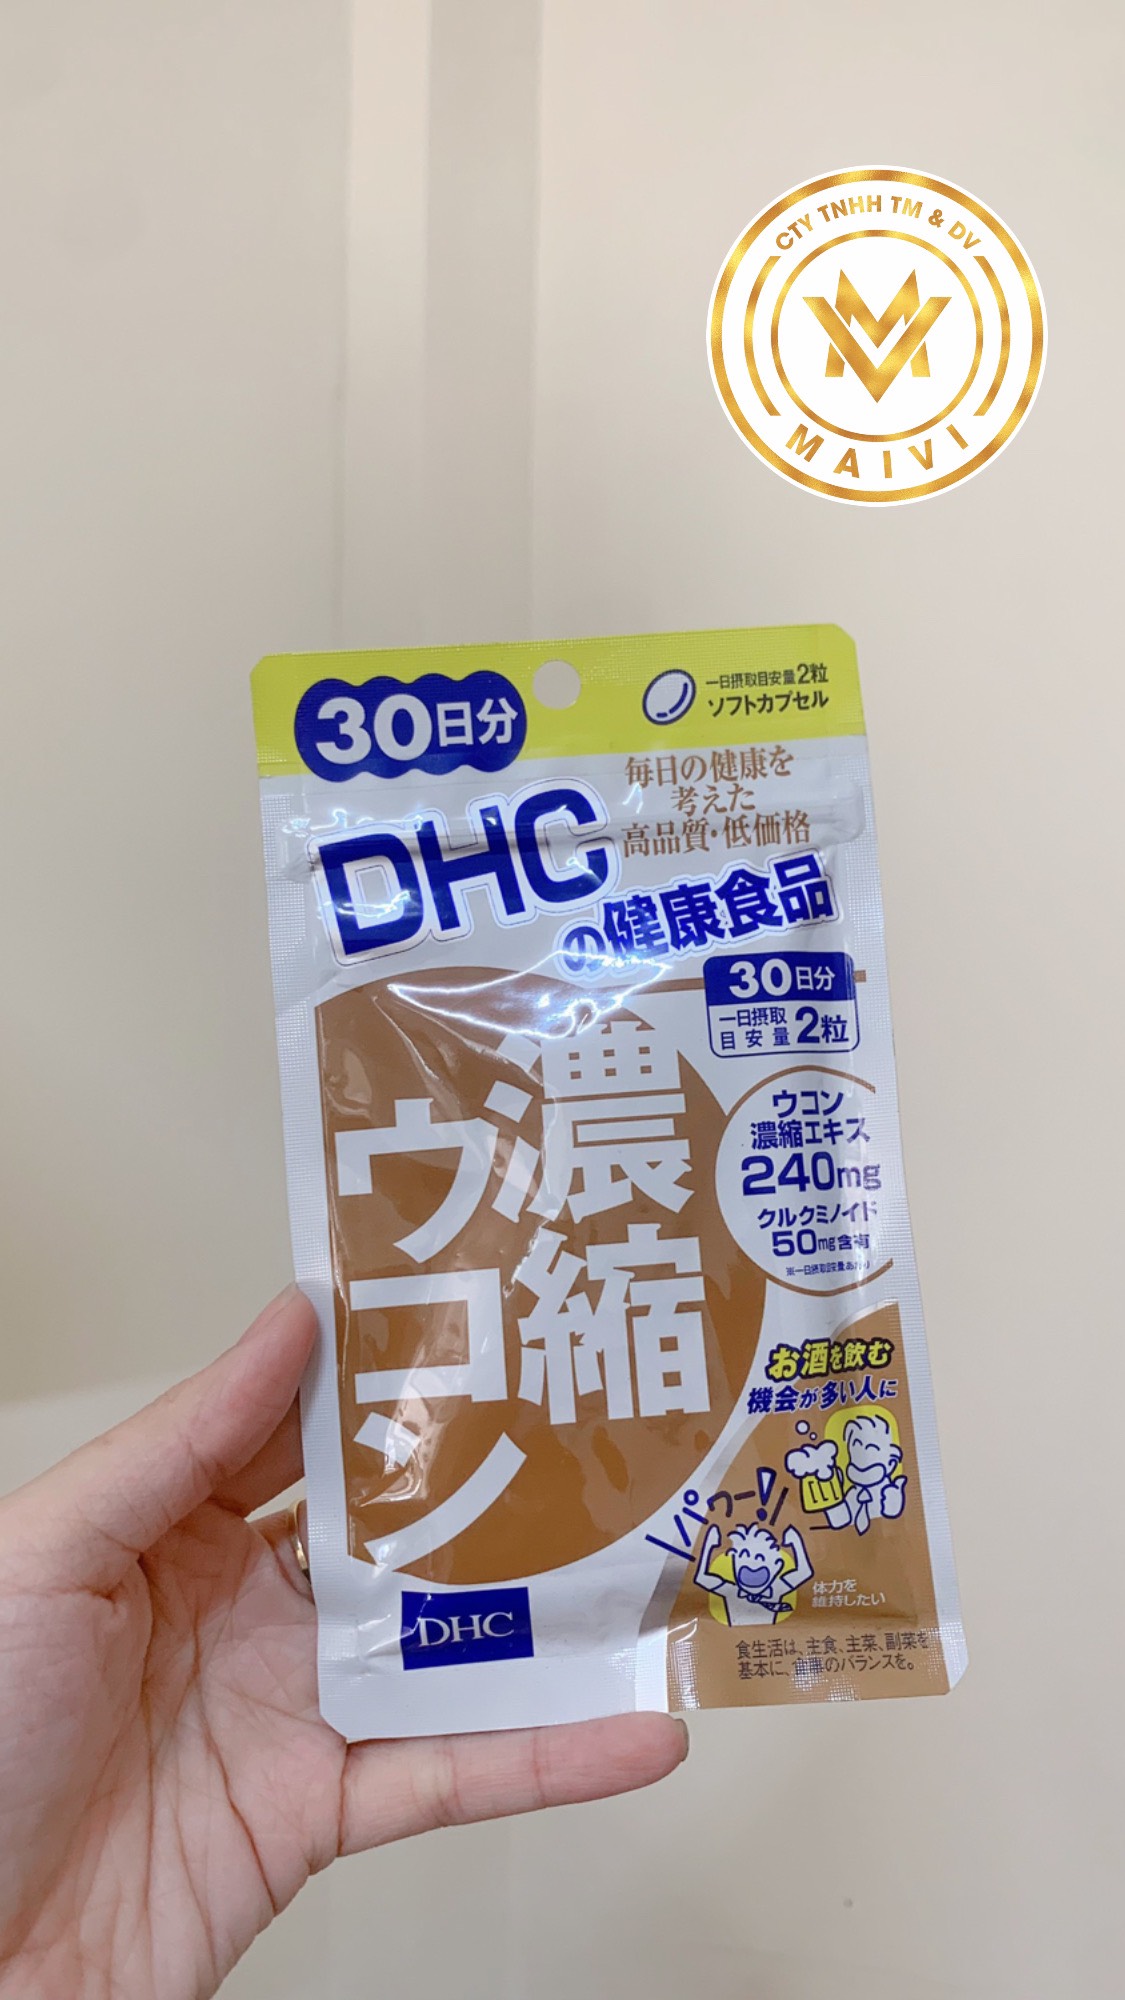 Thực phẩm bảo vệ sức khỏe viên nghệ DHC Concentrated Turmeric 30 days ( hàng chính hãng, có tem phụ )